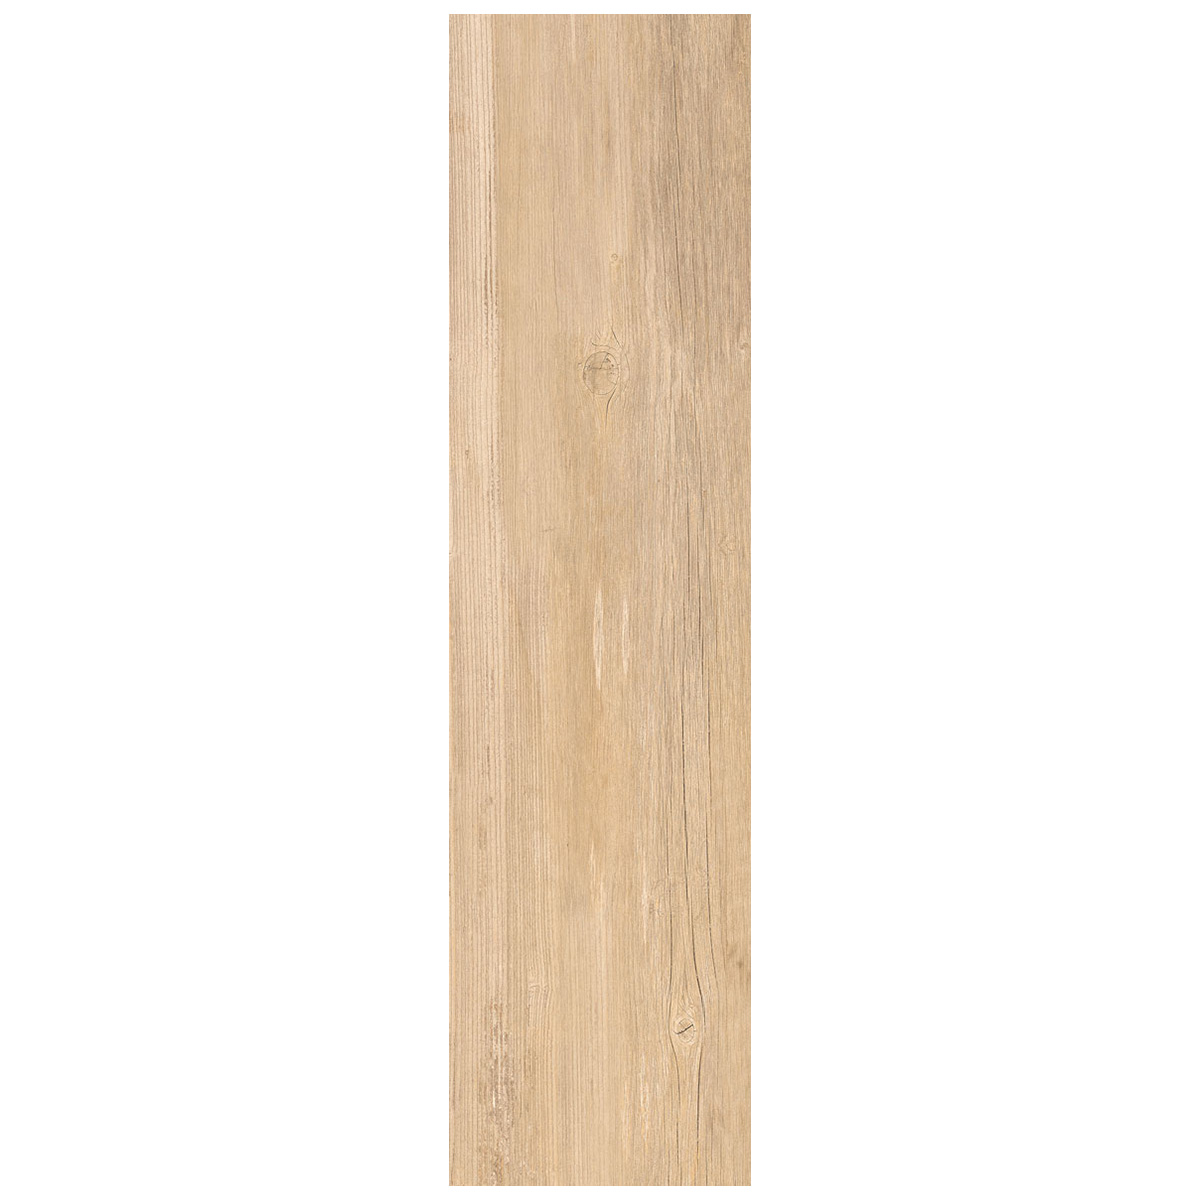 Gres porcellanato effetto legno miele streetwood 15,6x60,6 - Bagni